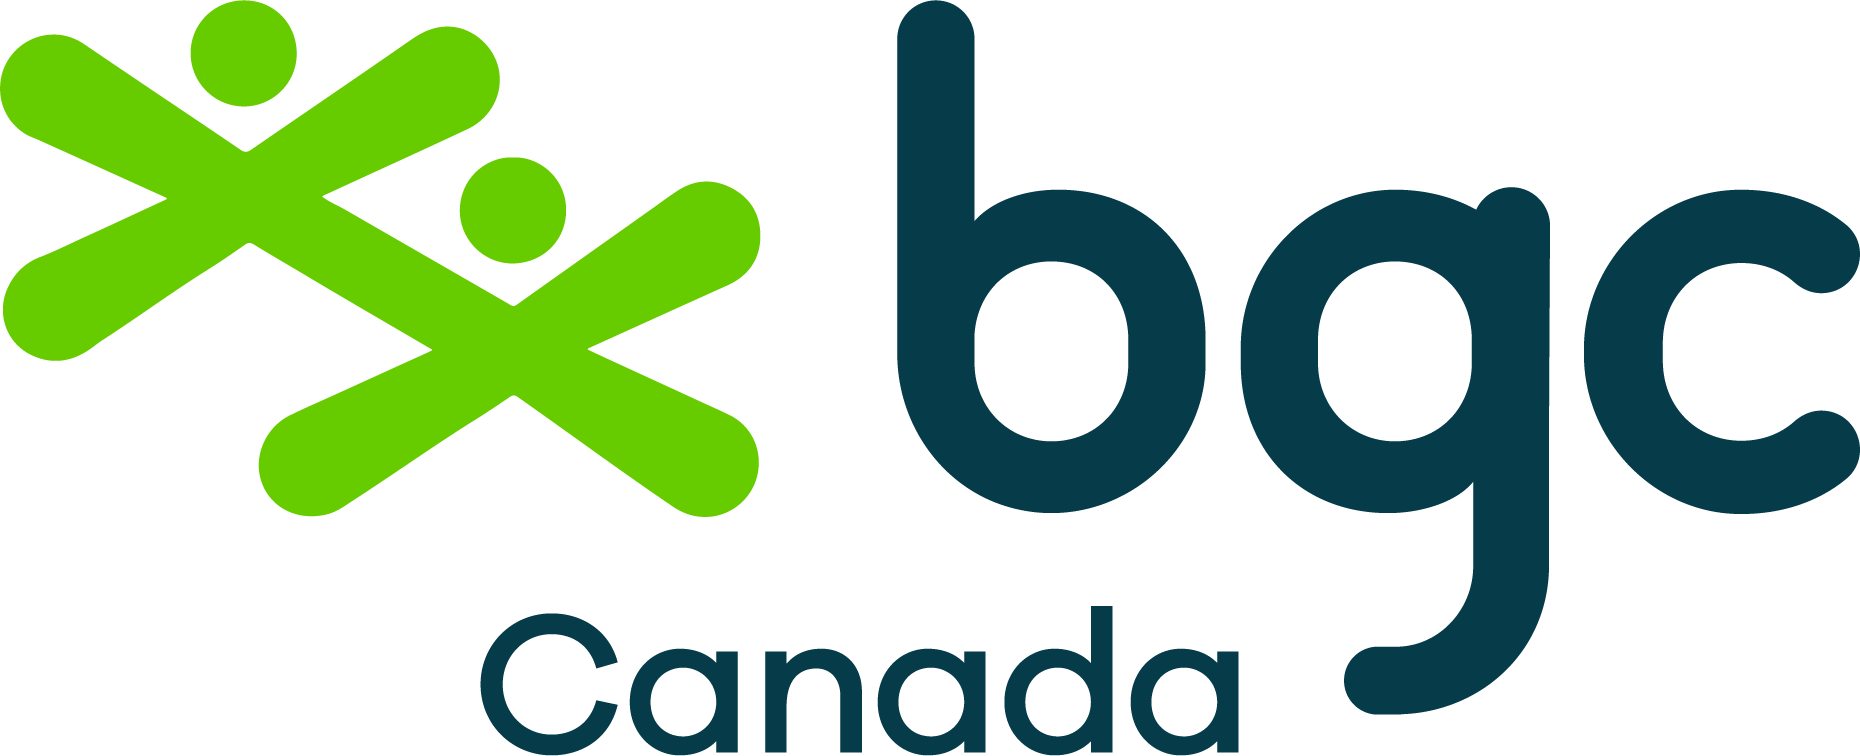 BGC Canada